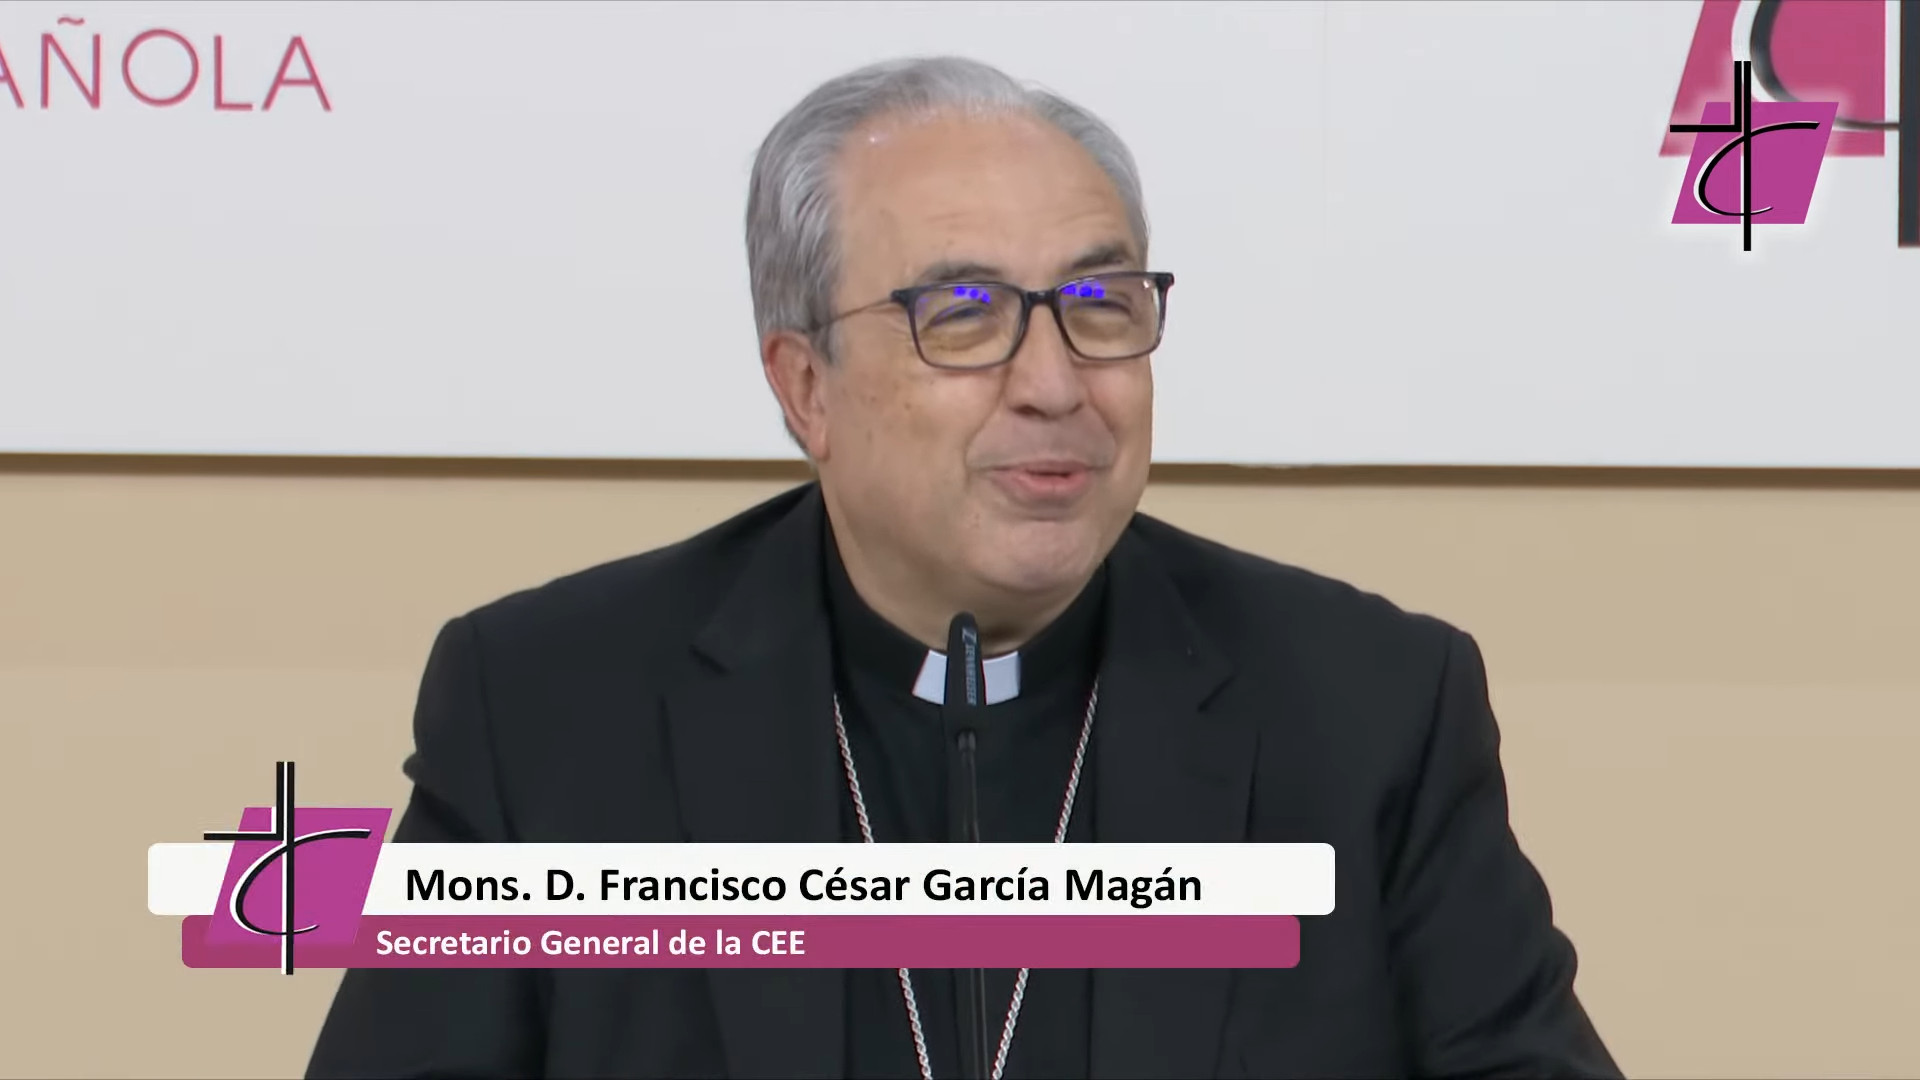 Mons. Francisco César García Magán es elegido secretario general de la Conferencia Episcopal Española